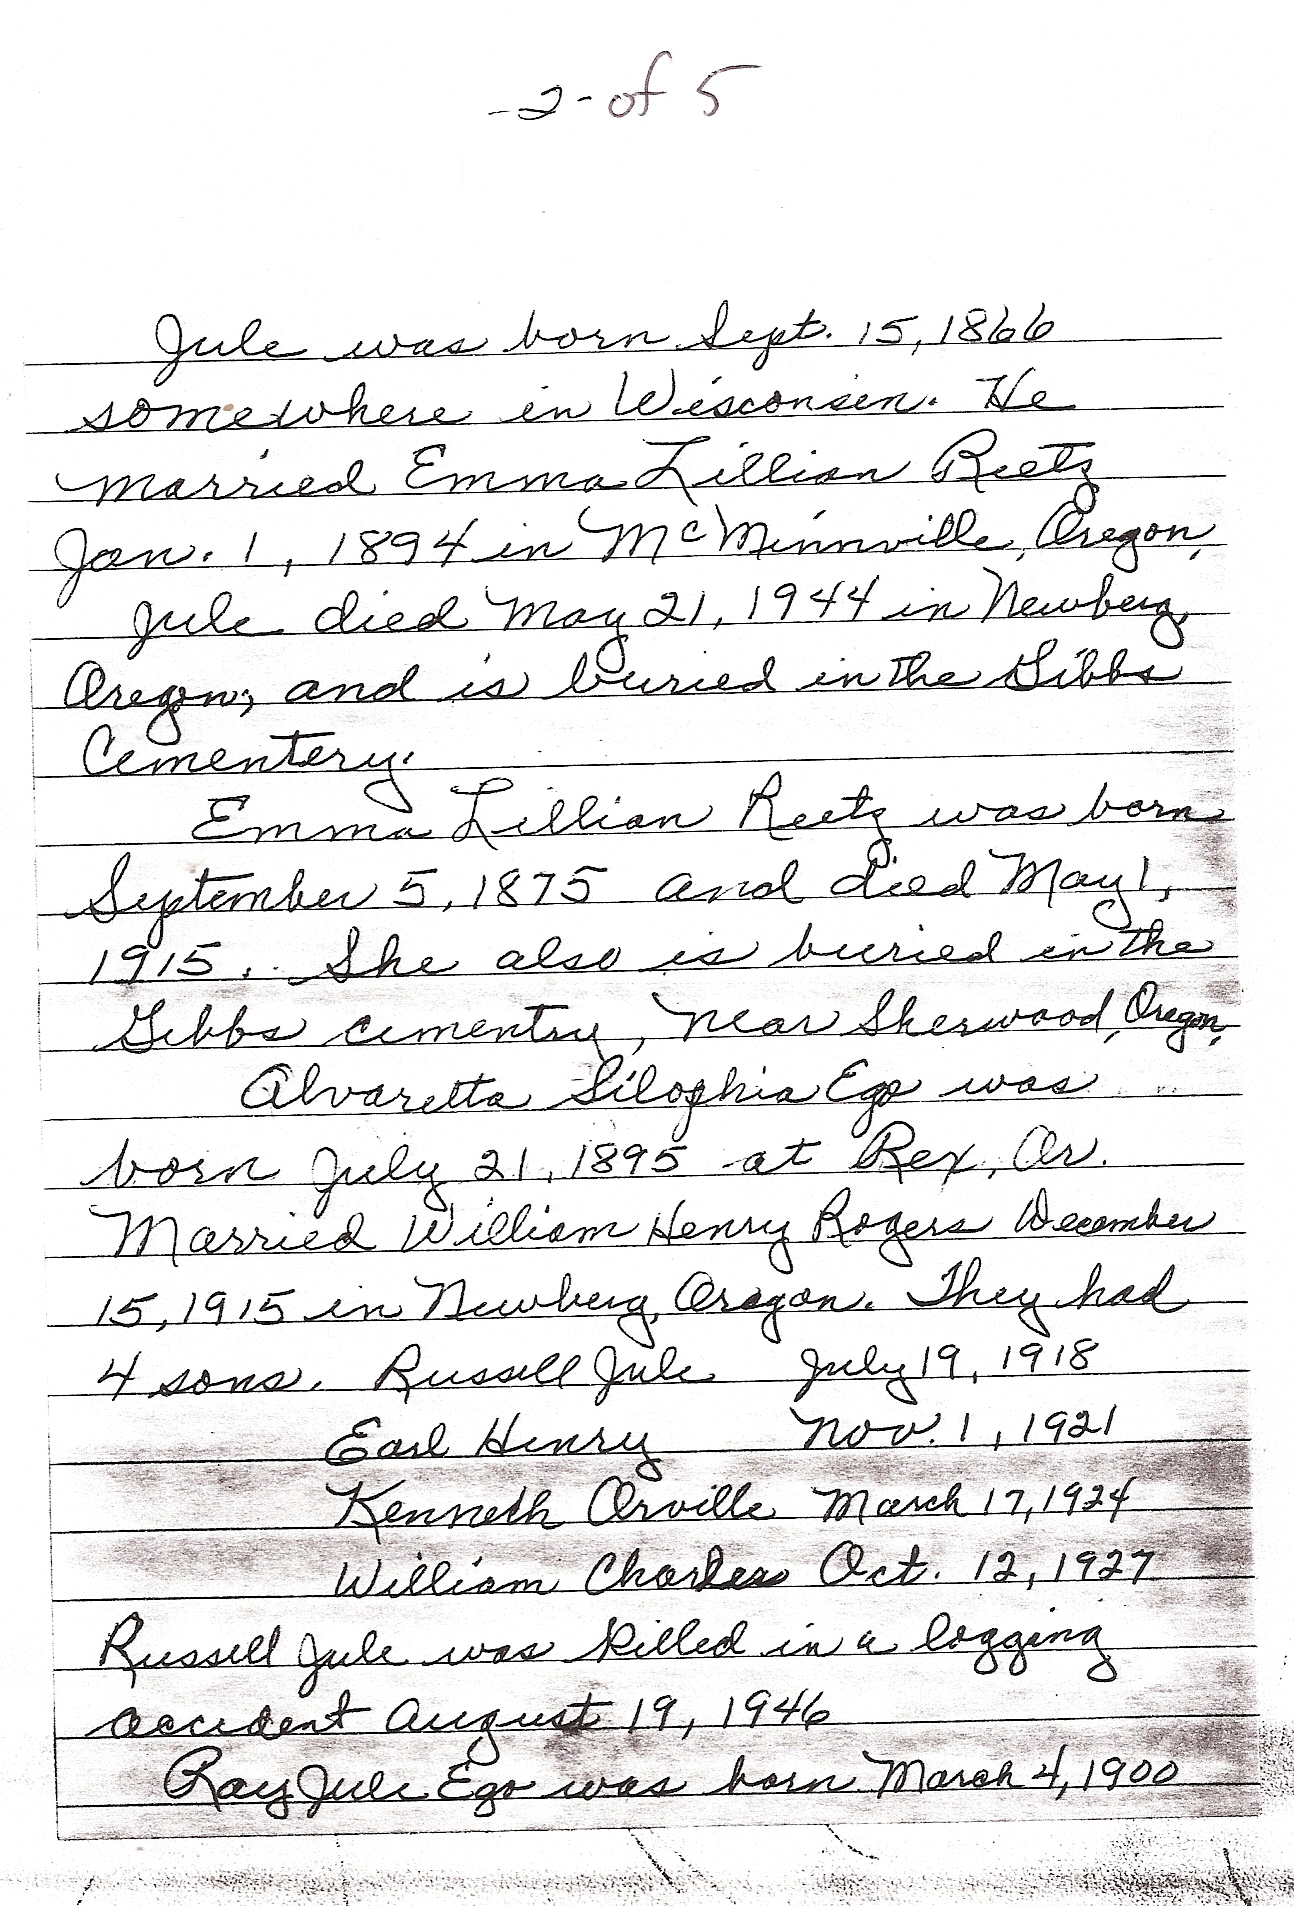 Hand written letter pg 2  of 5